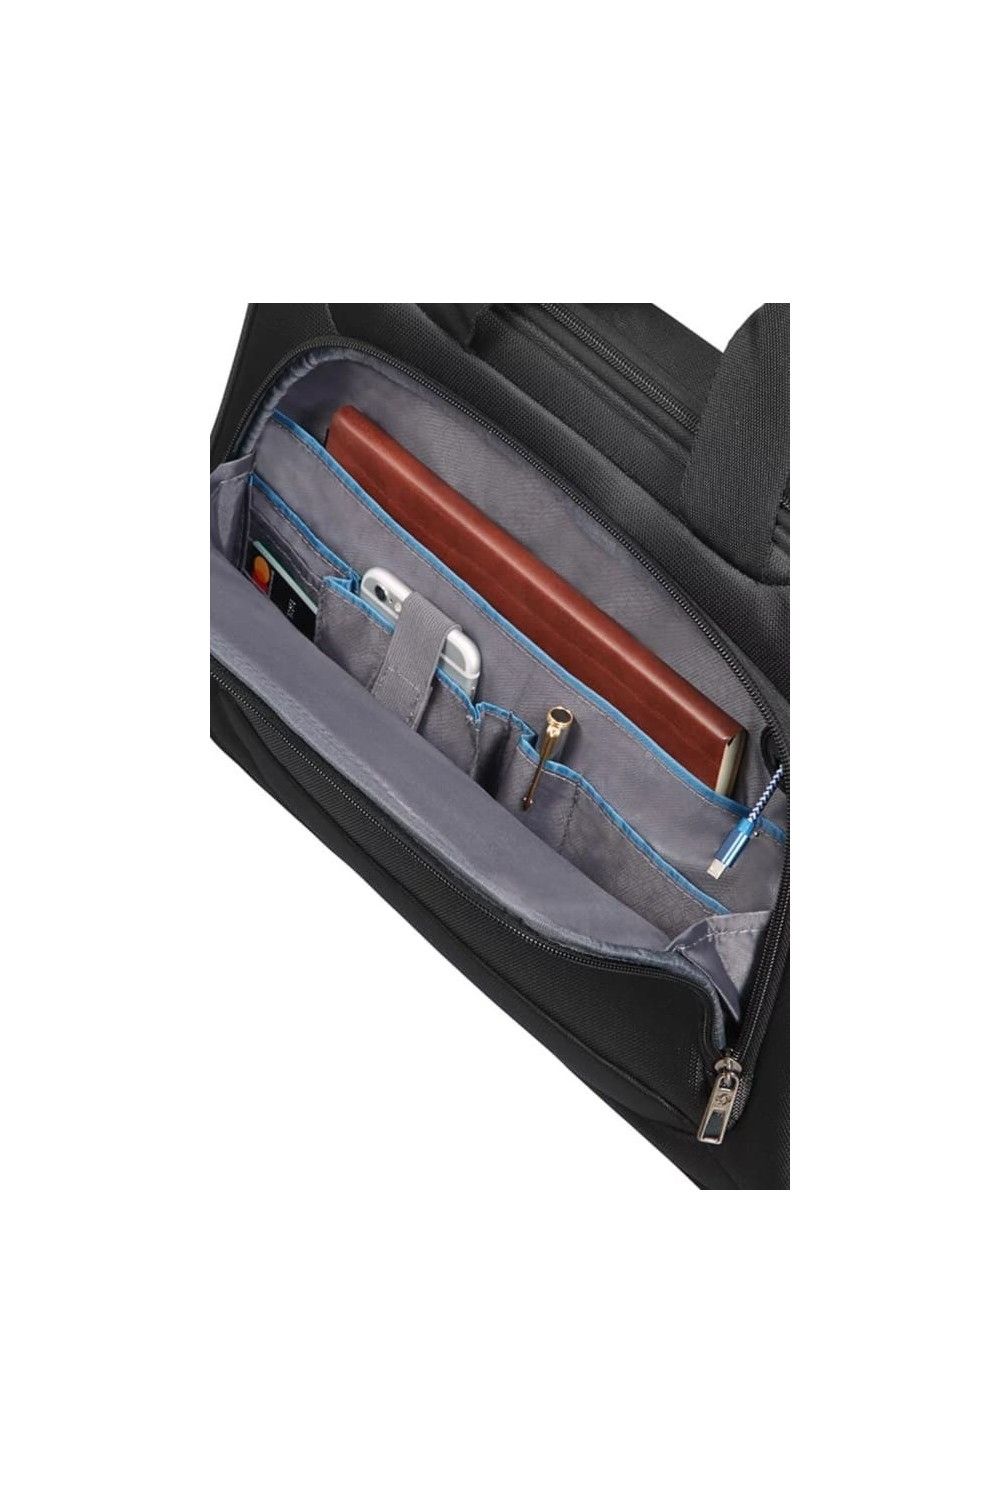 Samsonite Vectura Evo briefcase 14.1 inches